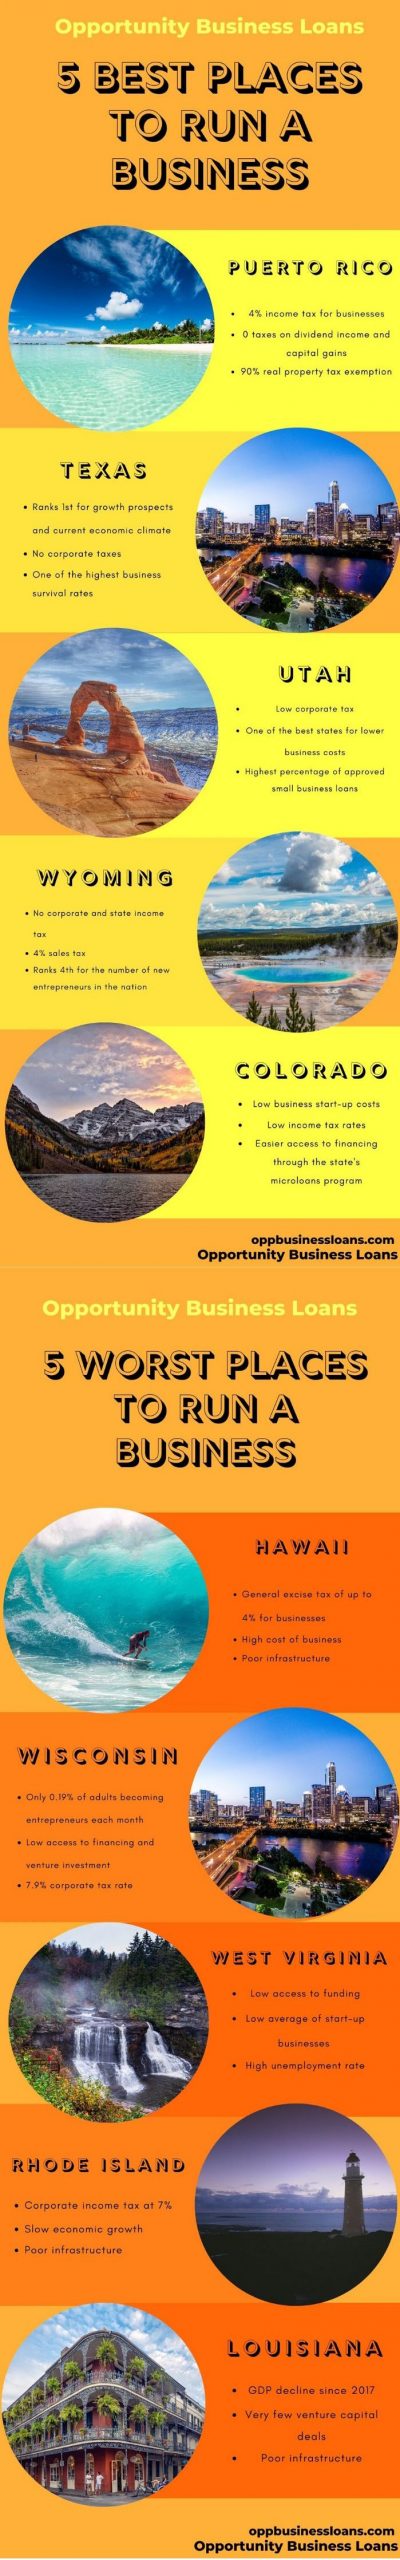 미국에서 사업하기 가장 좋은 5 곳, 사업하기 가장 나쁜 5 곳...?! 인포그래픽 By Oppbusinessloans.Com...